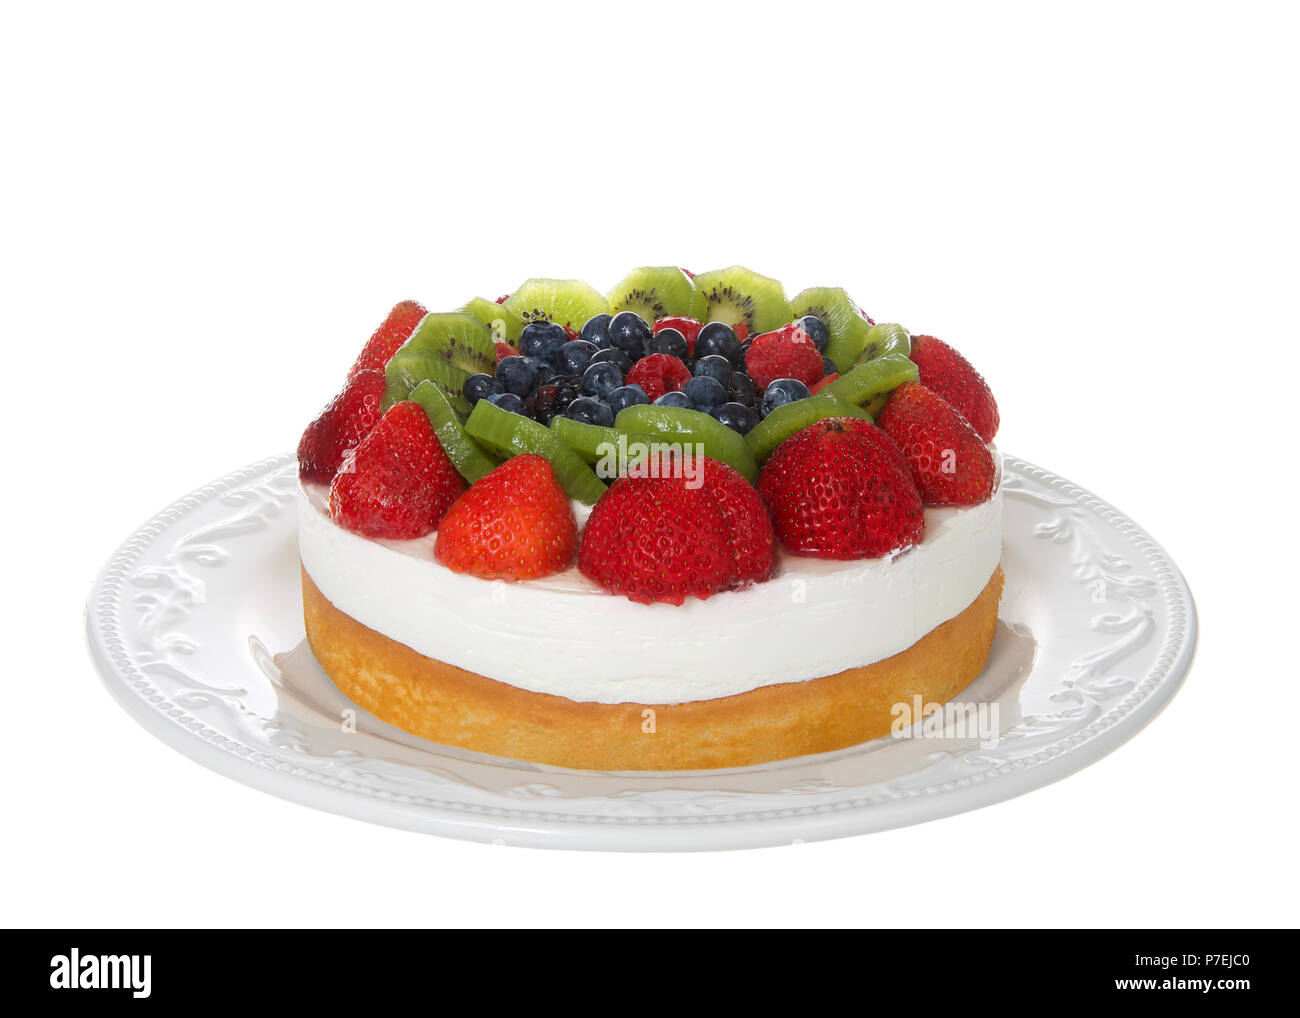 Frisches Obst auf einem buttergebäck Kuchen mit Schlagsahne Topping auf aus weißem Porzellan Platte isoliert auf Weiss. Fokus für größere Schärfentiefe gestapelt. Stockfoto